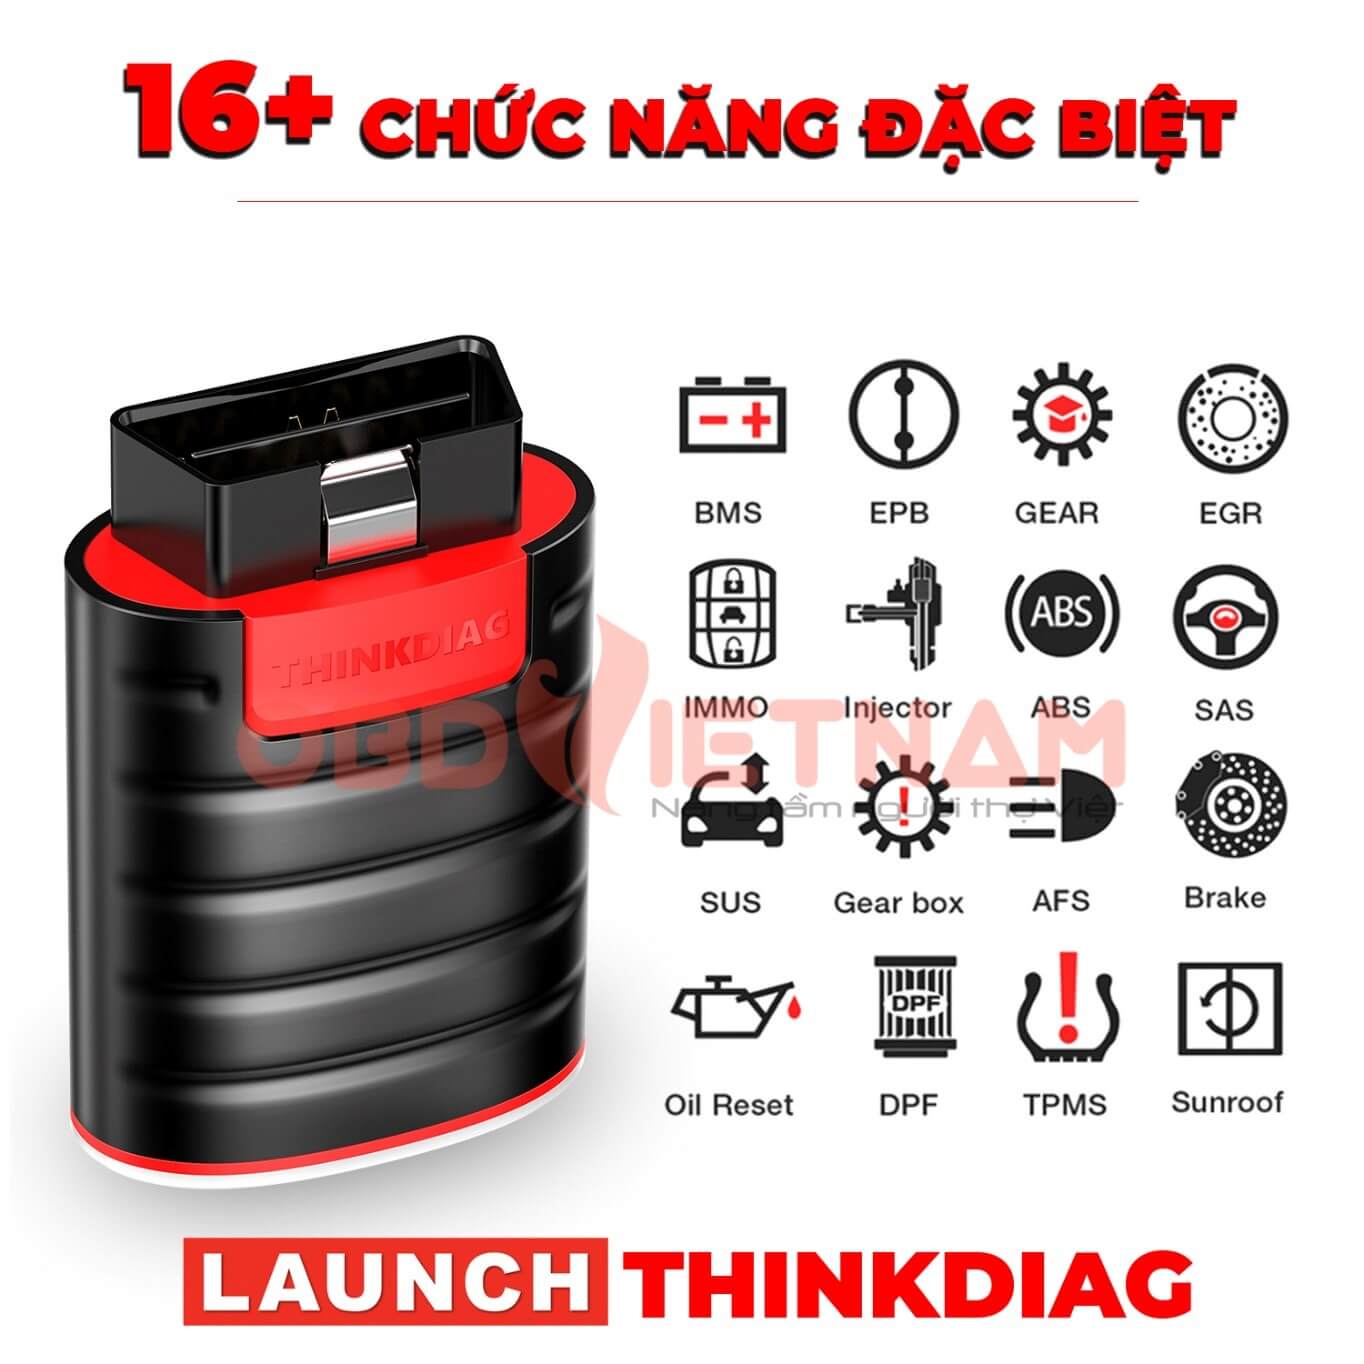 Hình 8: Launch ThinkDiag hỗ trợ 16 tính năng bảo dưỡng để đáp ứng công việc sửa chữa, bảo dưỡng